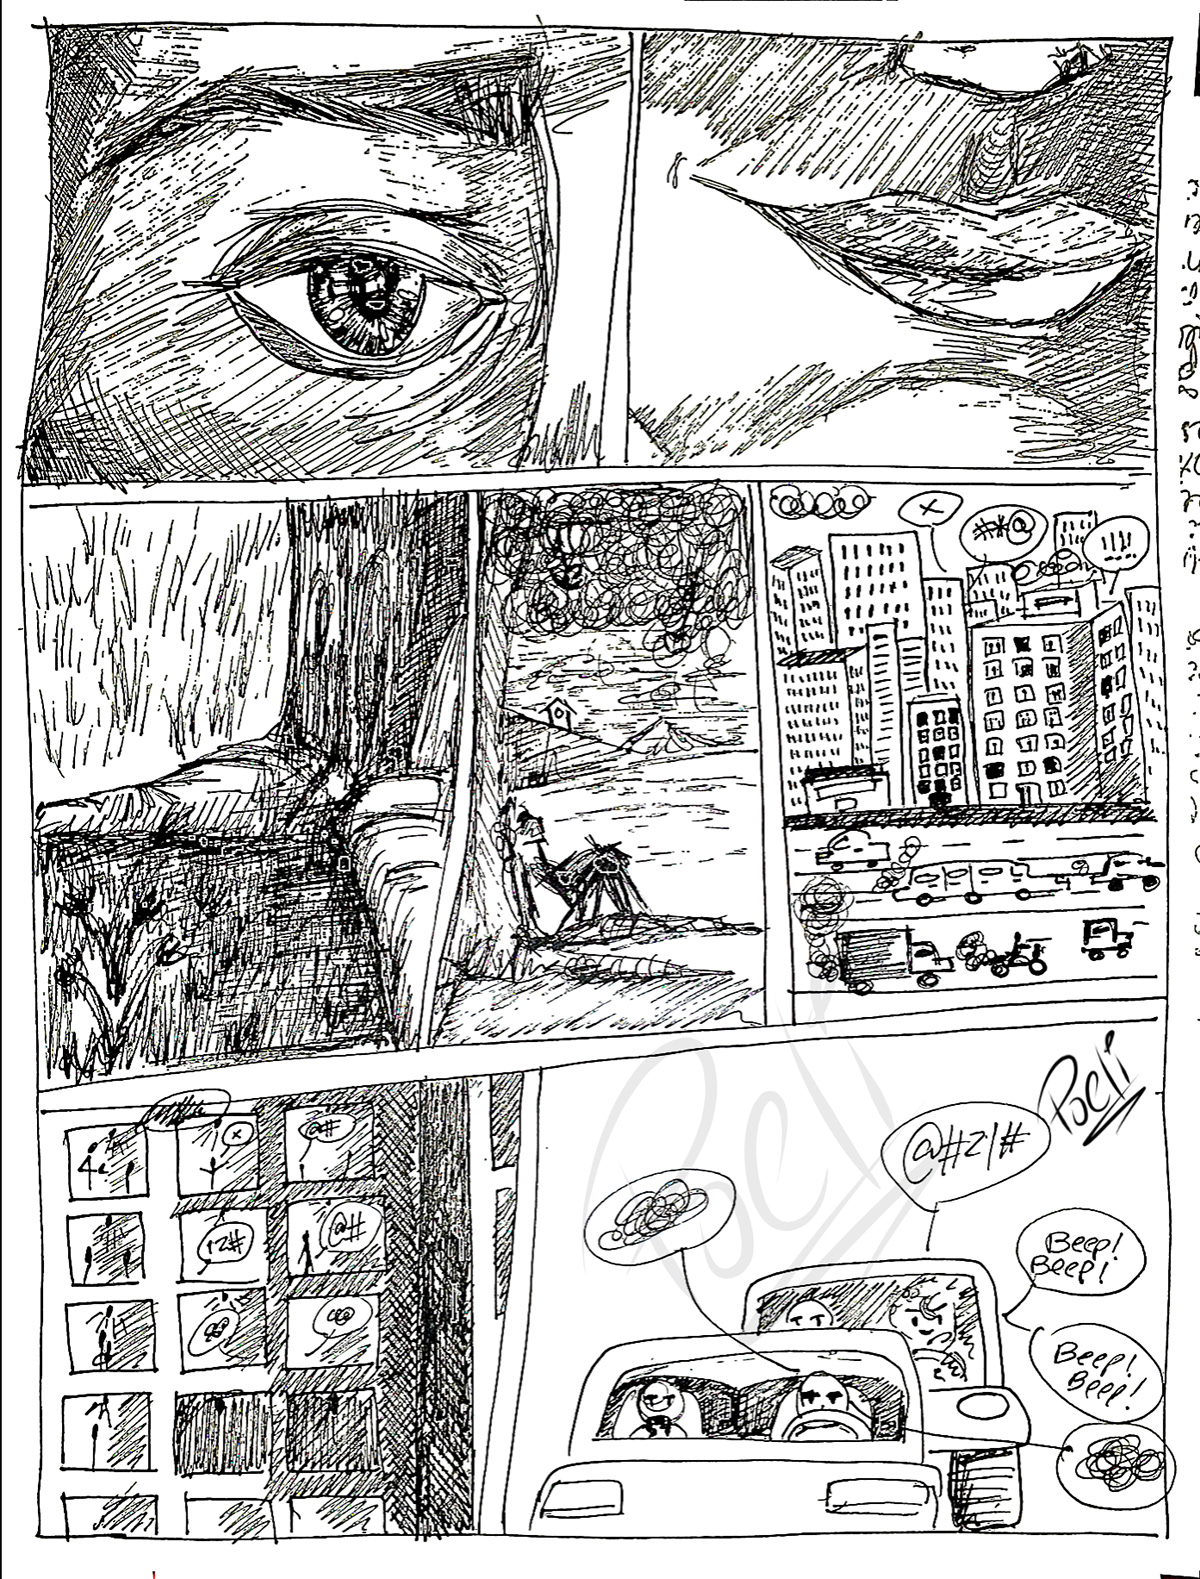 comic caricatura comics arte rapidografo lapicero sketch art comic comic secuence Rapidograh secuence secuencia de comic